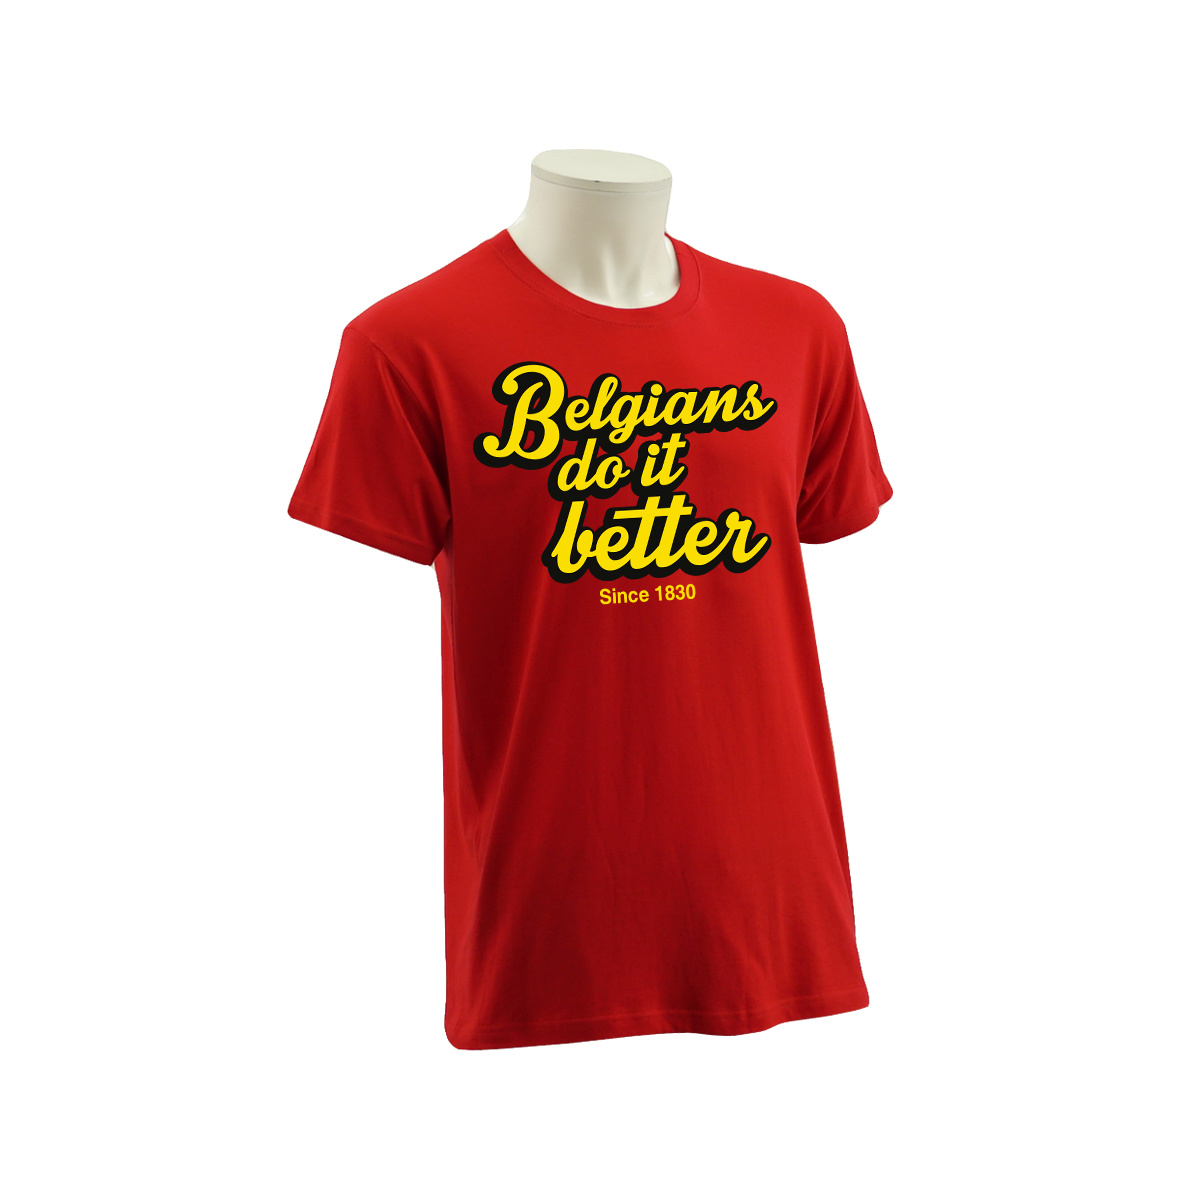 Gepersonaliseerd T-shirt België